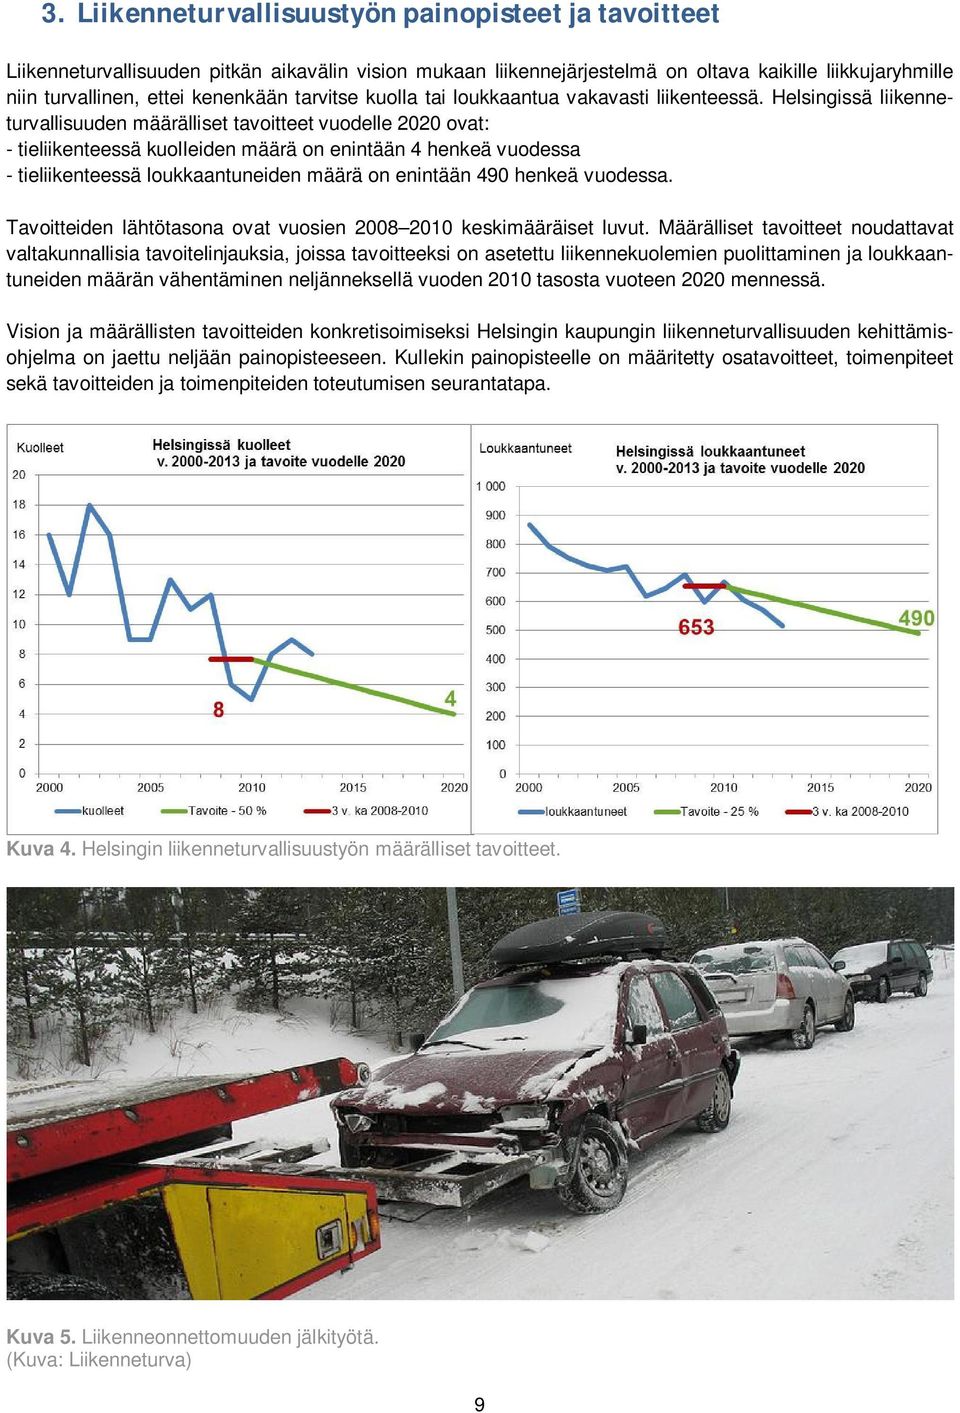 Helsingissä liikenneturvallisuuden määrälliset tavoitteet vuodelle 2020 ovat: - tieliikenteessä kuolleiden määrä on enintään 4 henkeä vuodessa - tieliikenteessä loukkaantuneiden määrä on enintään 490